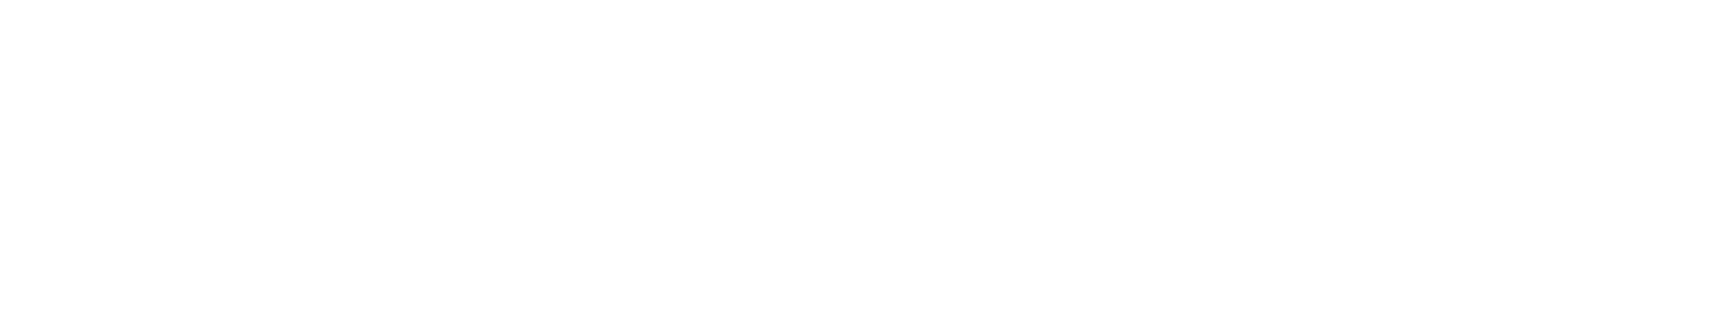 still-logo